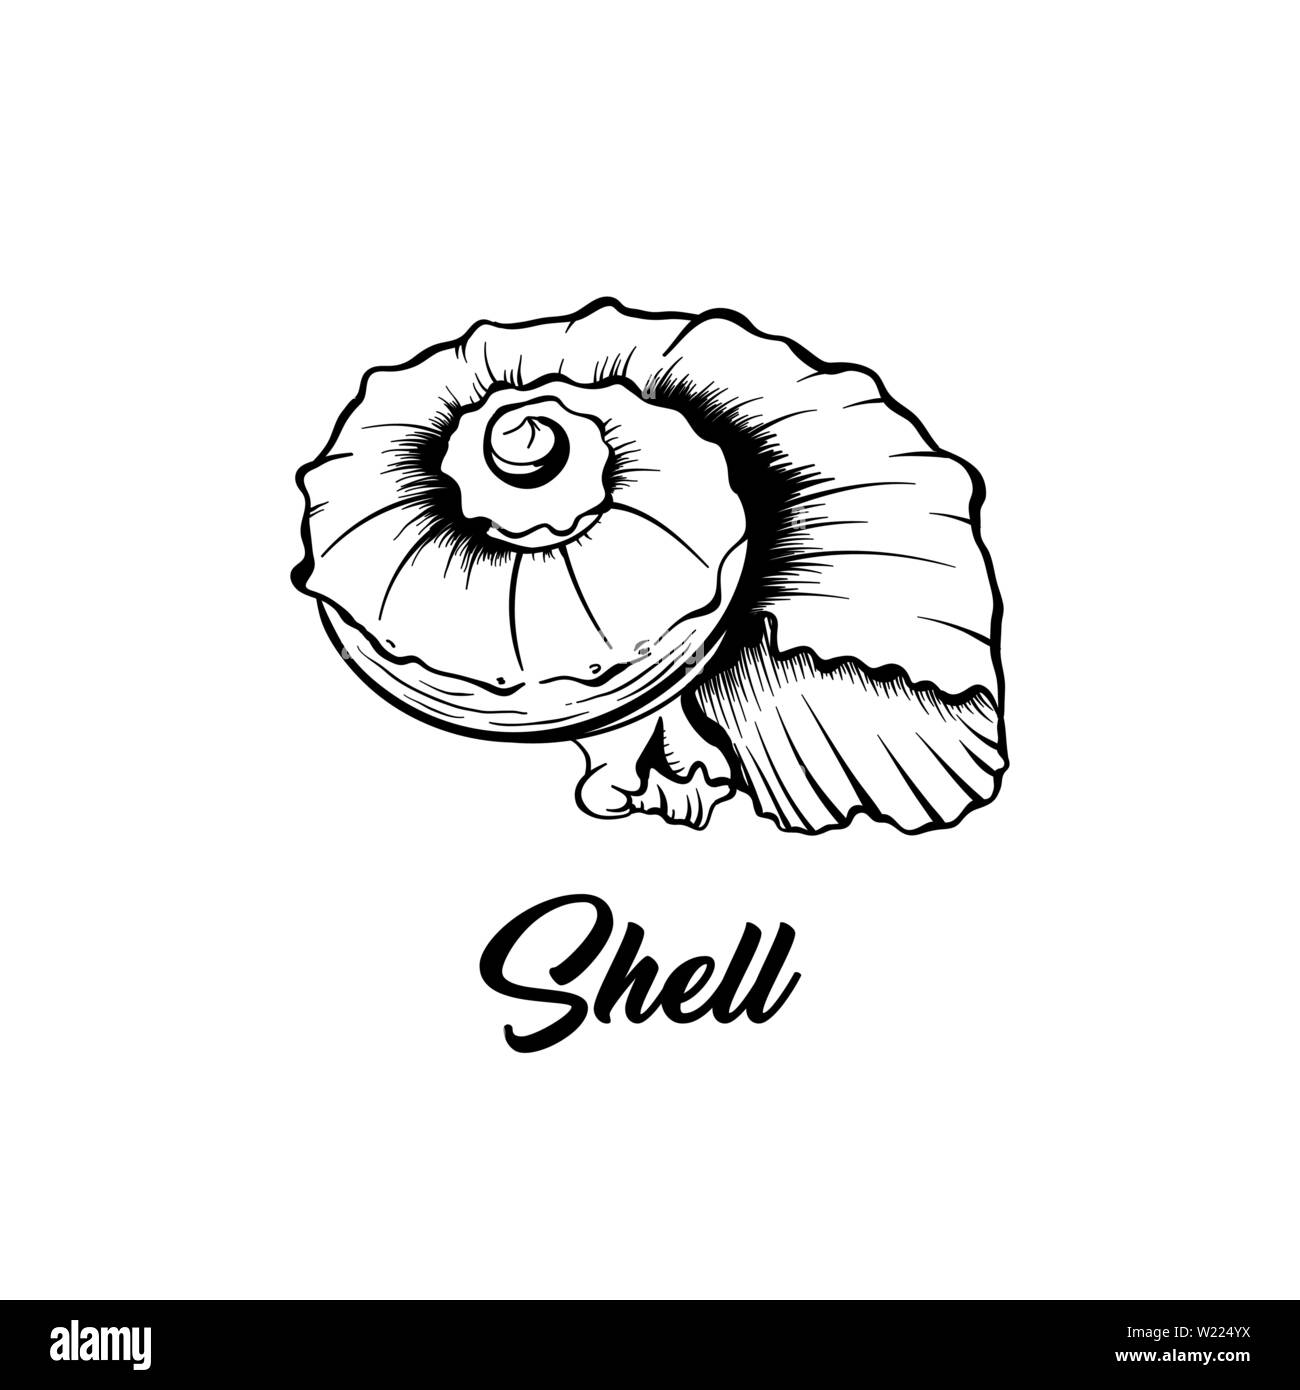 Sea Shell schwarz und weiß Vector Illustration. Spiralförmige nautische Kreatur Freihandzeichnen. Exotische Molluske, marine wirbellose Tiere Gravur. Sommer Urlaub poster Design Element Stock Vektor